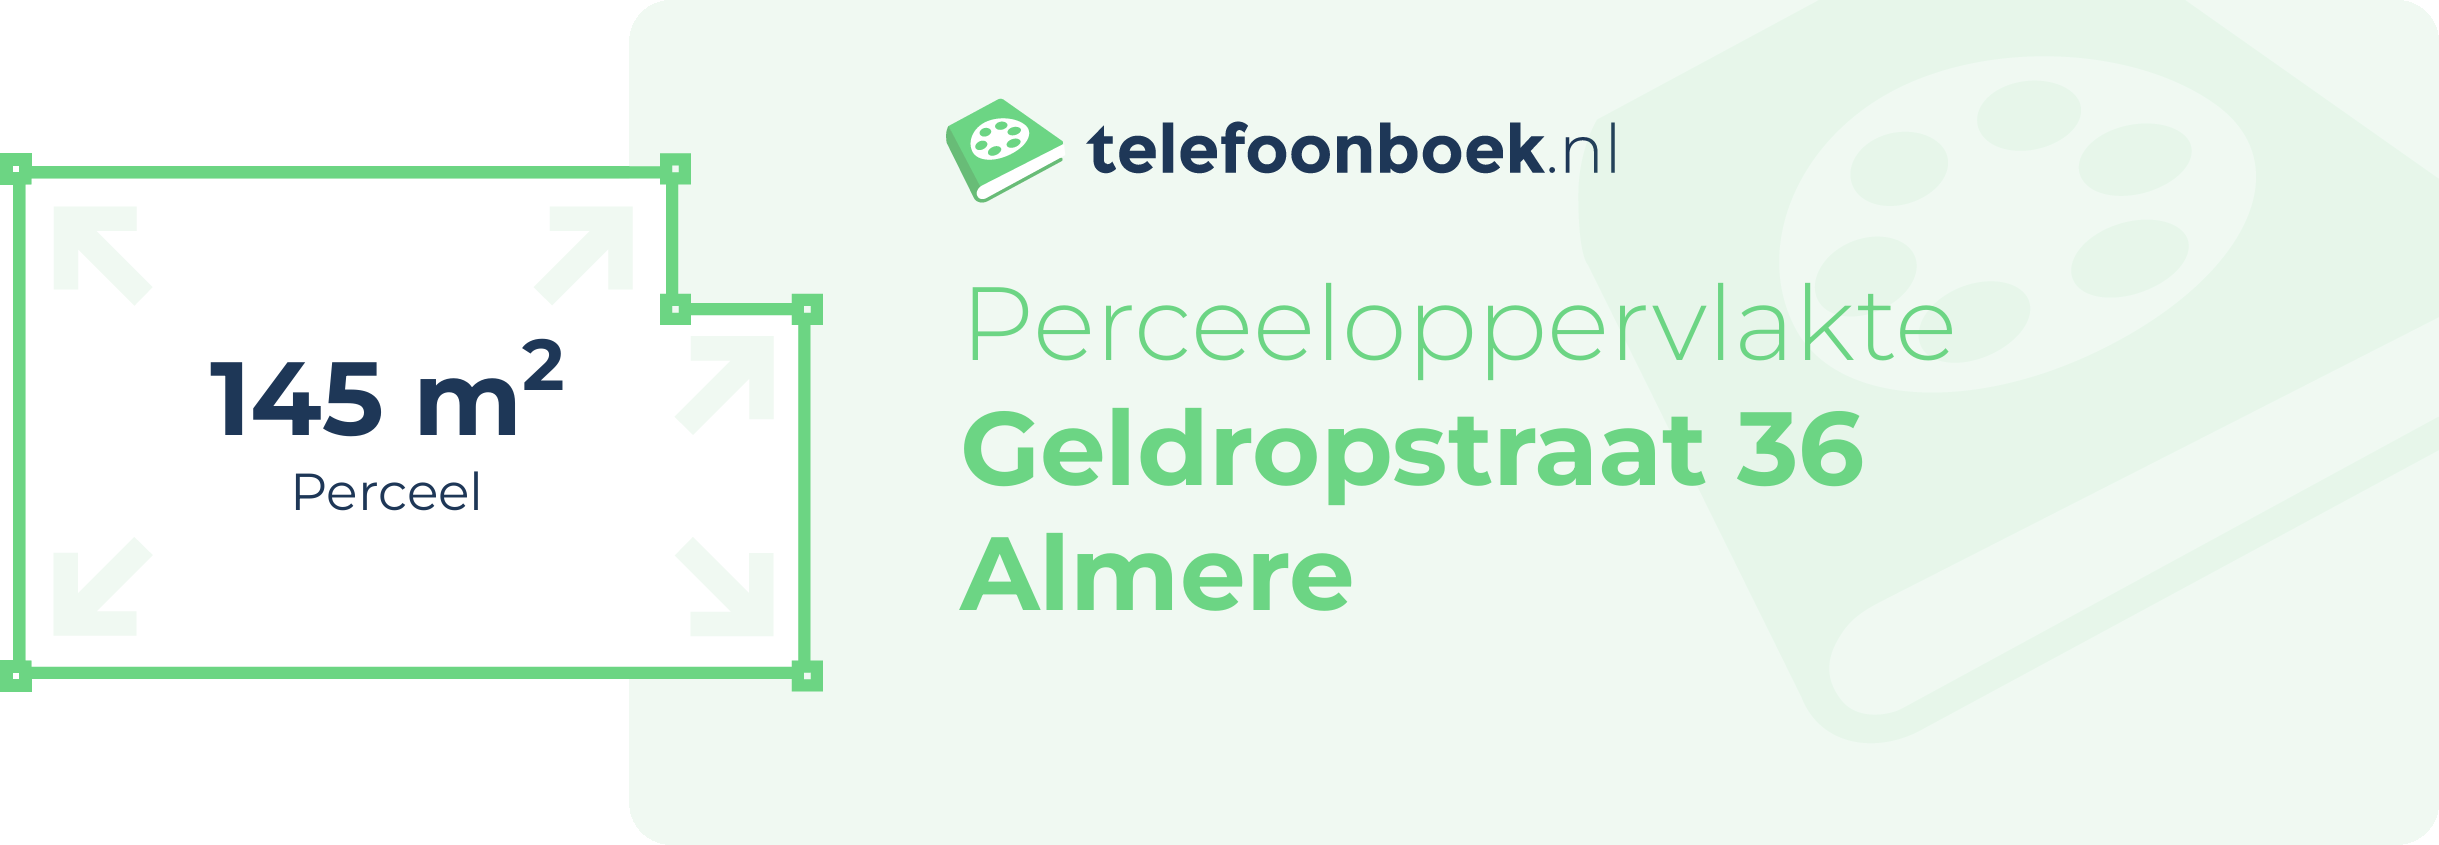 Perceeloppervlakte Geldropstraat 36 Almere